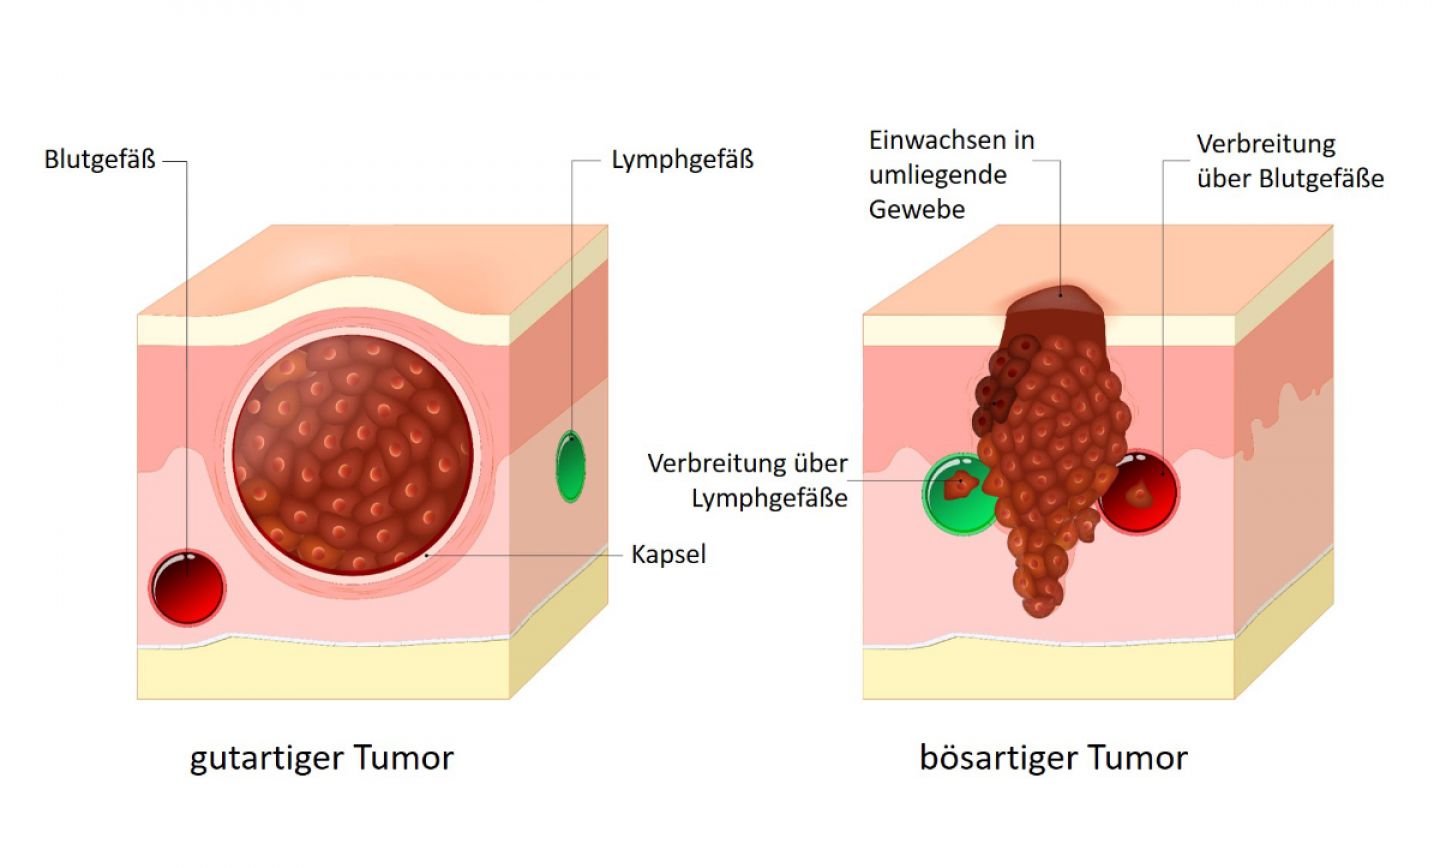 Ein gutartiger Tumor bildet einen abgeschlossenen Gewebeverband. Ein bösartiger Tumor wächst in andere Gewebe ein und kann sich über Blut- und Lymphbahnen ausbreiten.